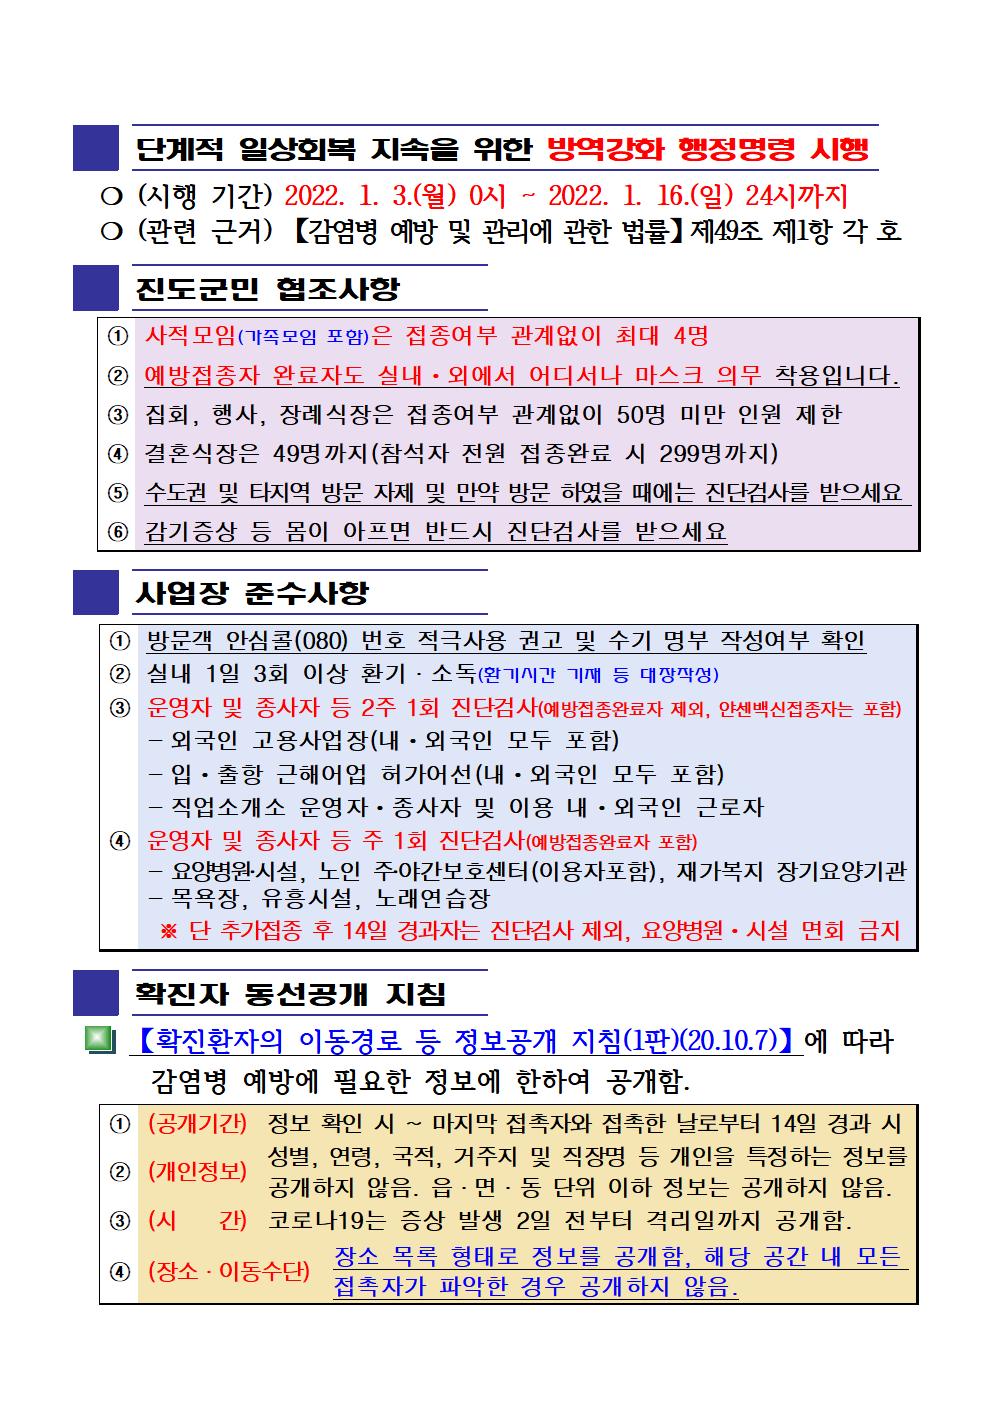 2022년 코로나 19 대응 일일상황보고(1월 5일 24시 기준) 첨부#2